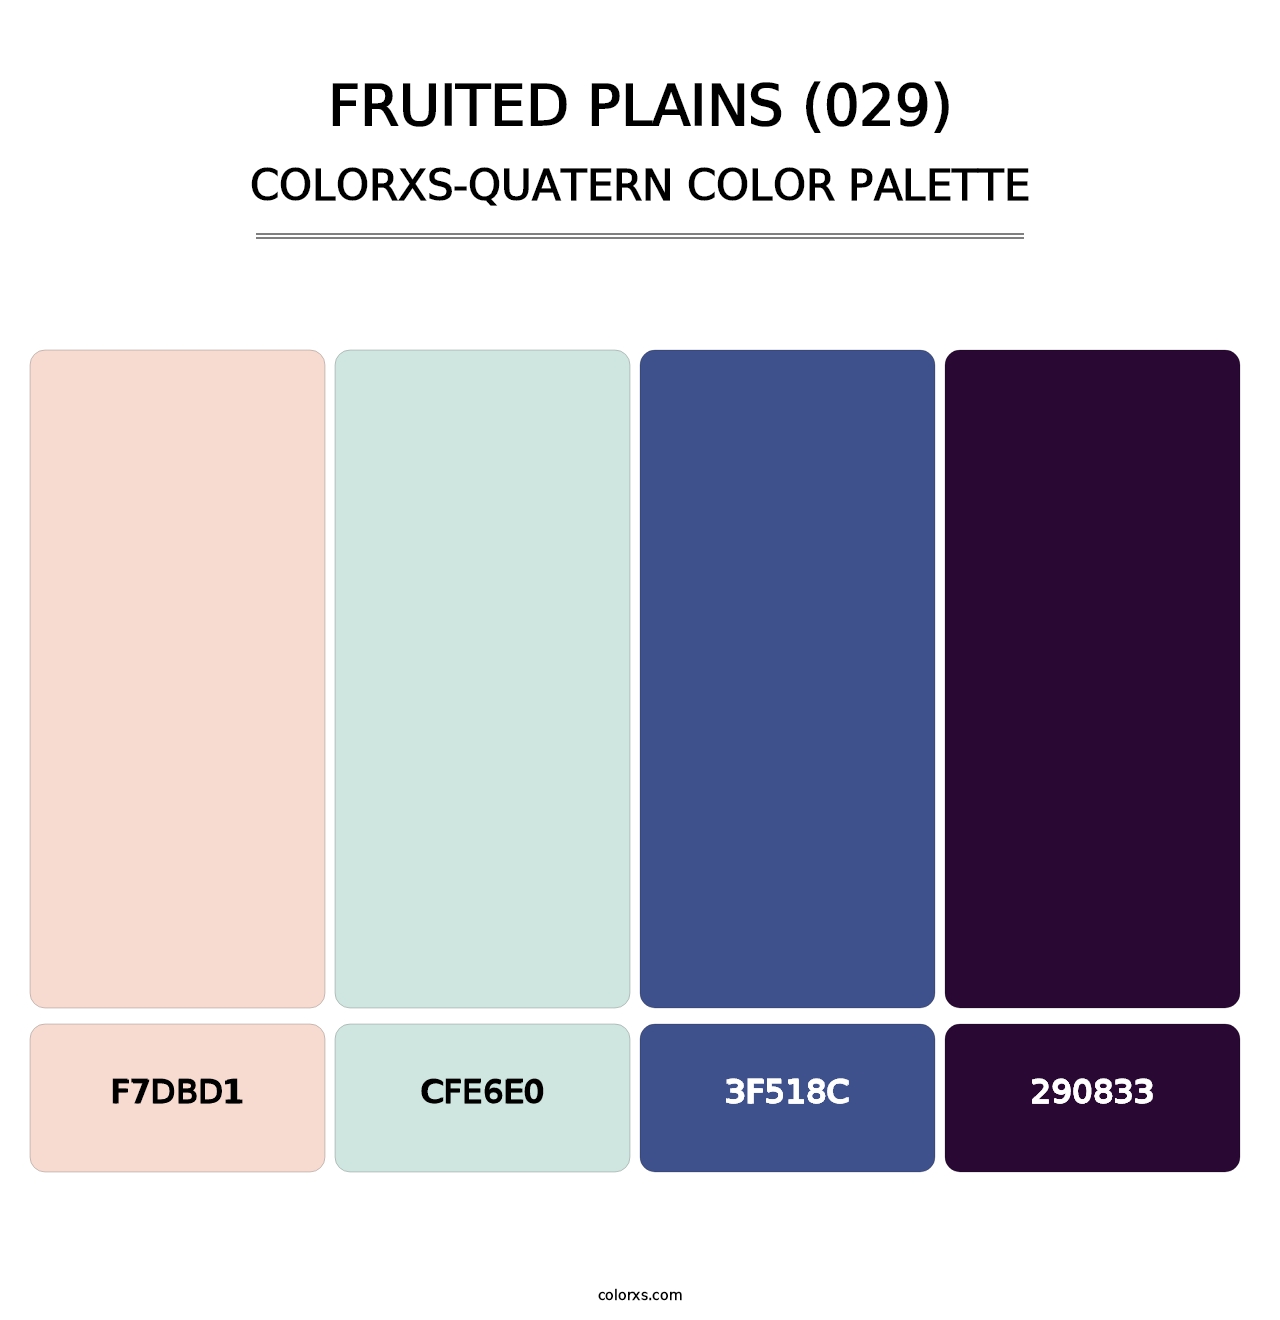 Fruited Plains (029) - Colorxs Quatern Palette